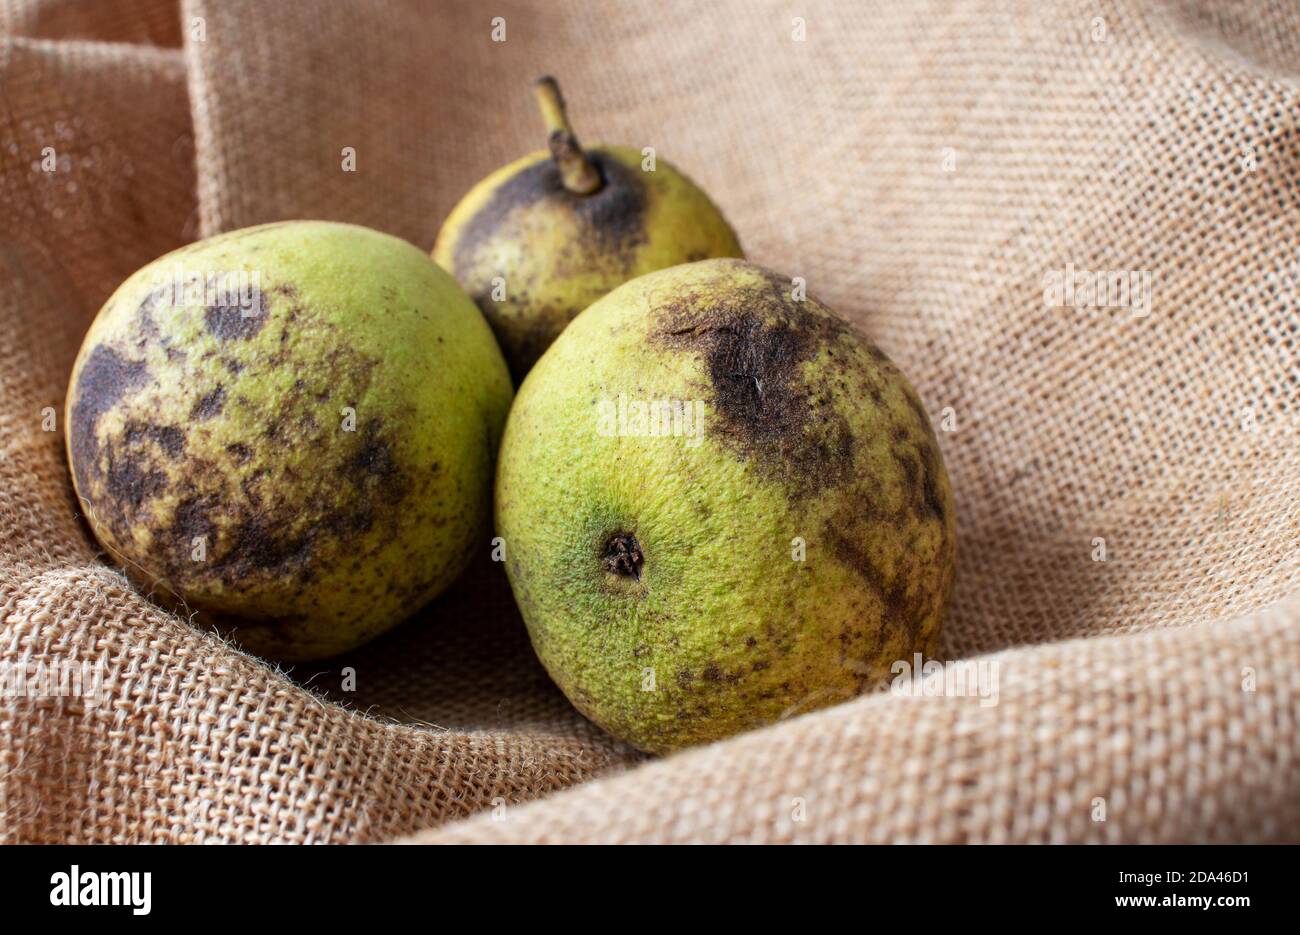 Noce nero americano orientale o nigra juglans fruts sulla tela di iuta ruvida. Foto Stock